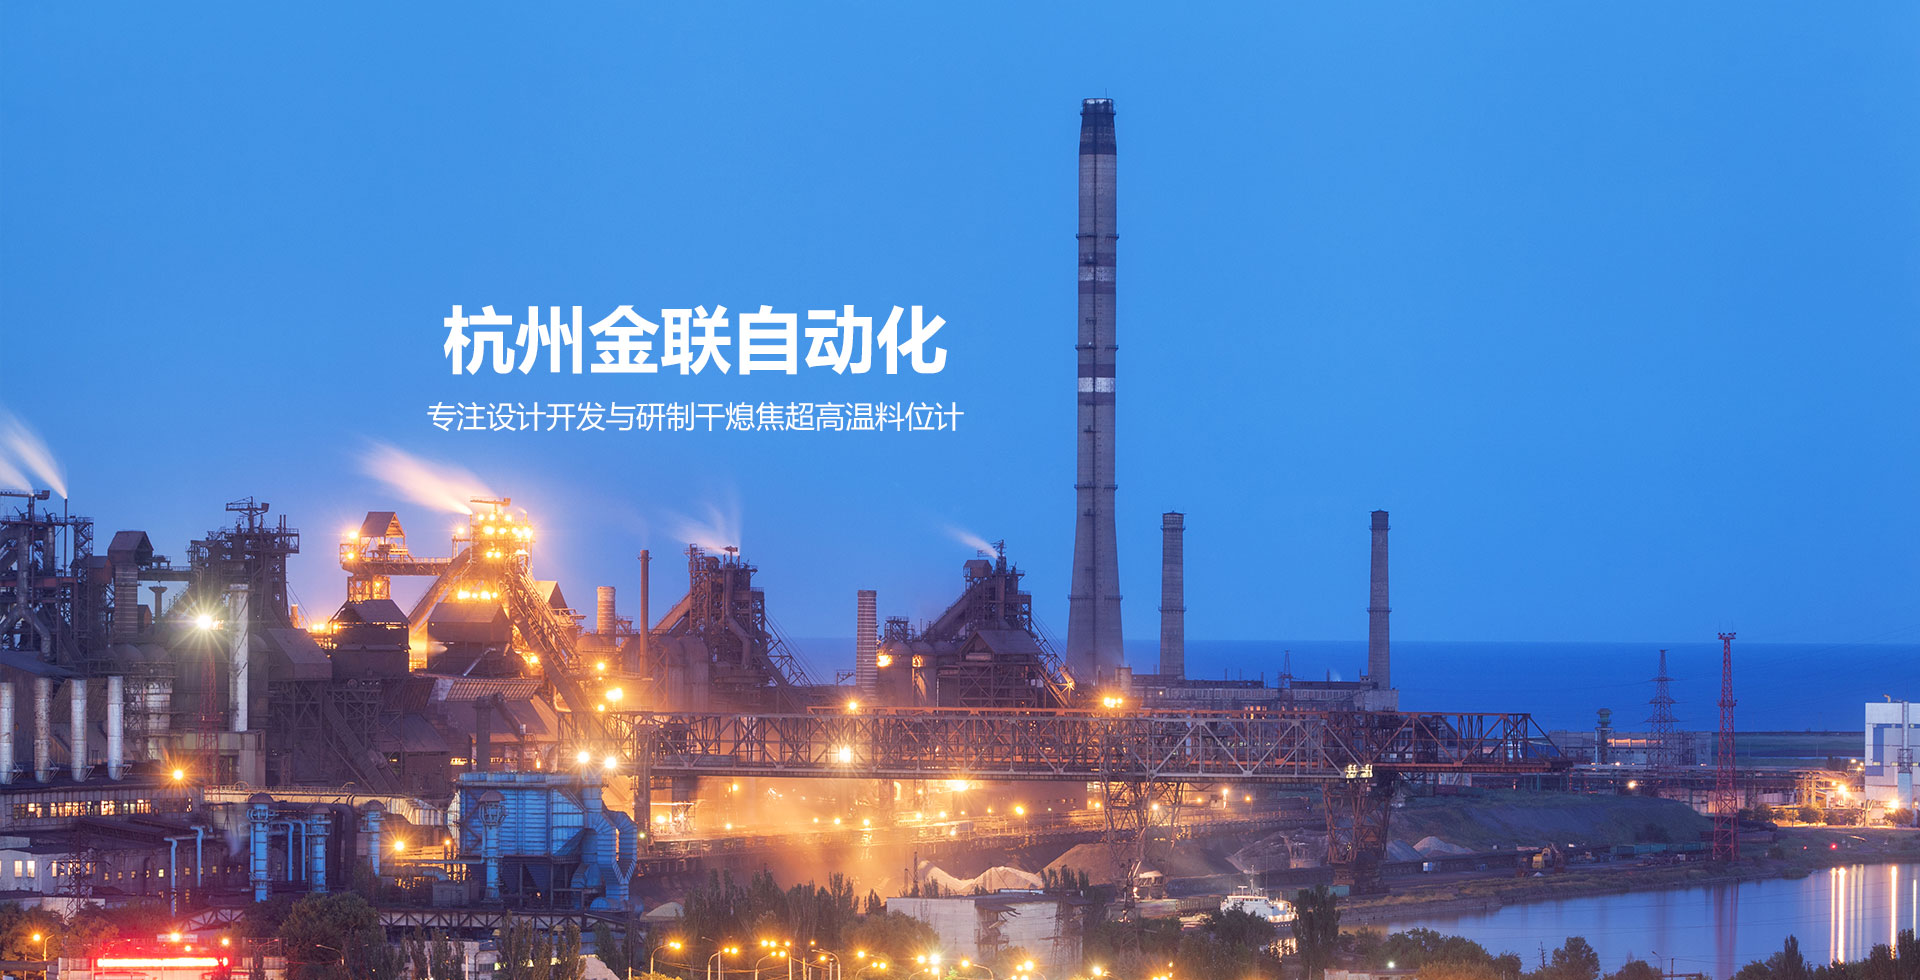  杭州金联自动化工程技术有限公司